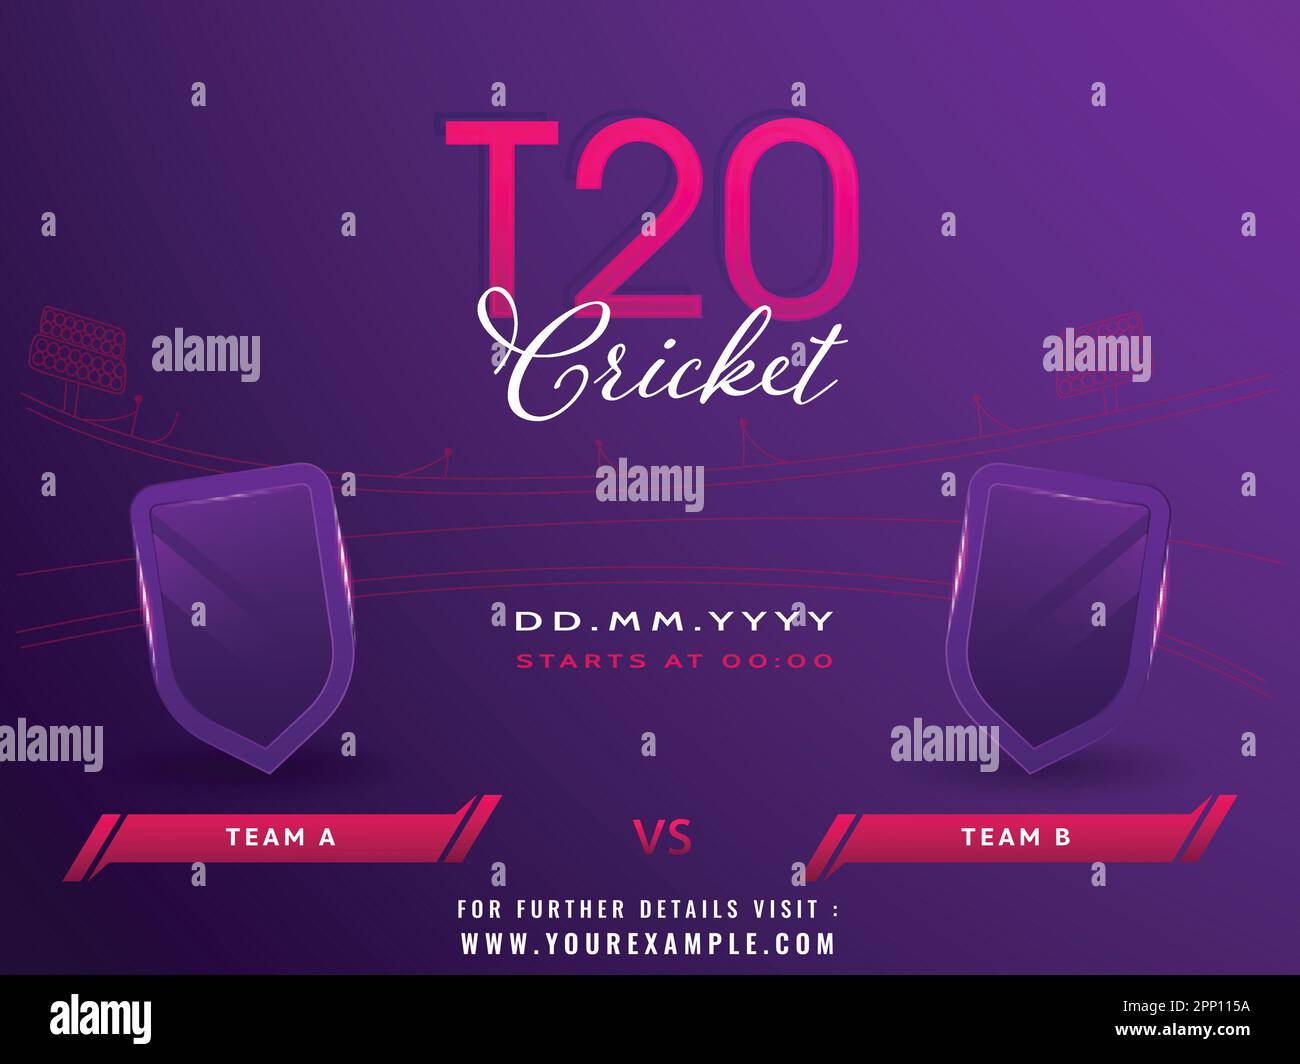 T20 Cricket Match-Konzept mit leerem Schild des teilnehmenden Teams A VS B im violetten Stadion-Hintergrund. Stock Vektor